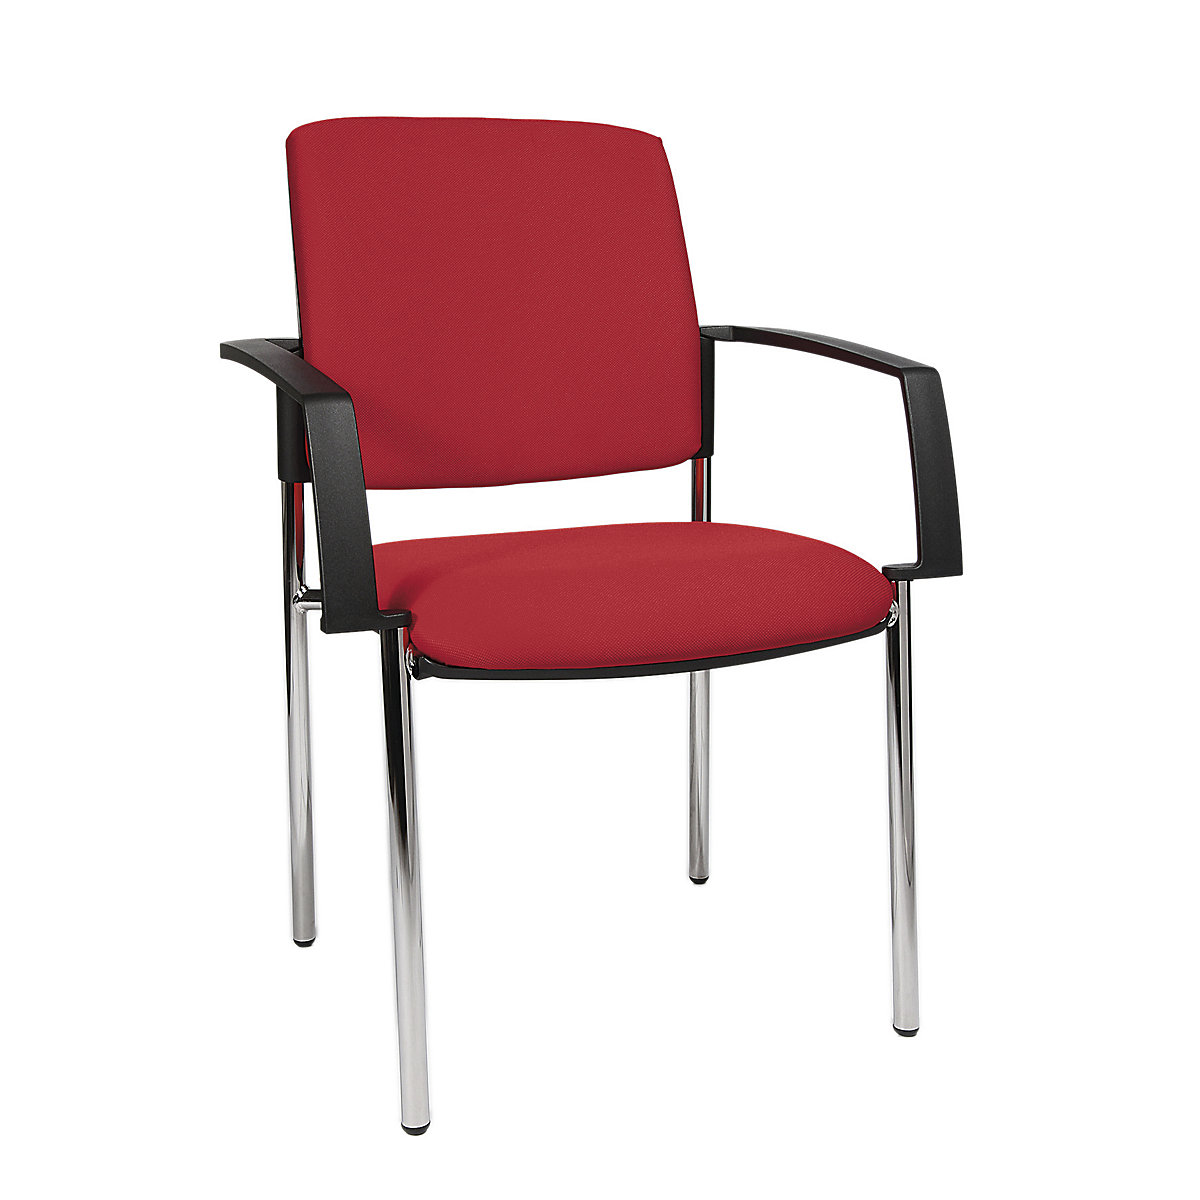 Cadeira almofadada de empilhar – Topstar, armação de quatro pés, embalagem de 2 unid., armação cromada, forro vermelho-1